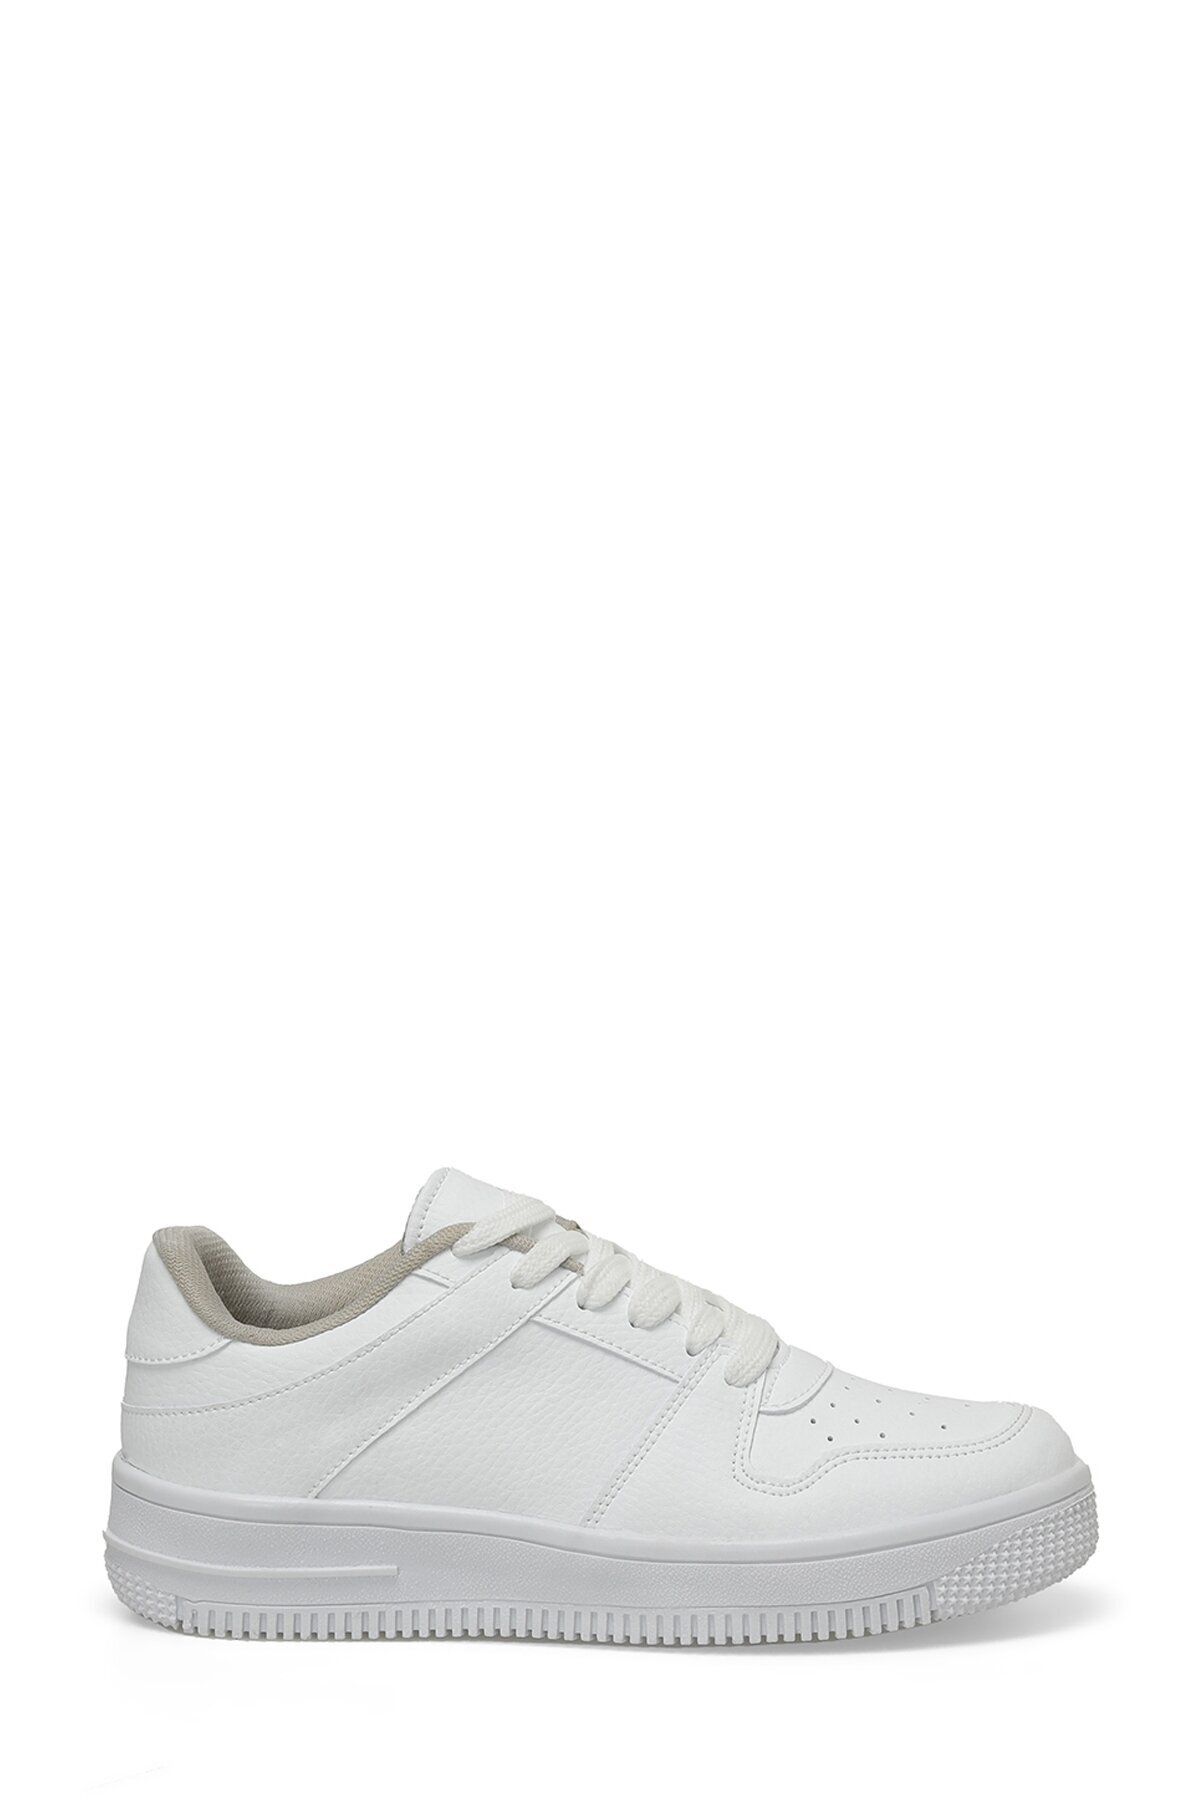 Butigo SEFFICA 3PR Beyaz Kadın Sneaker